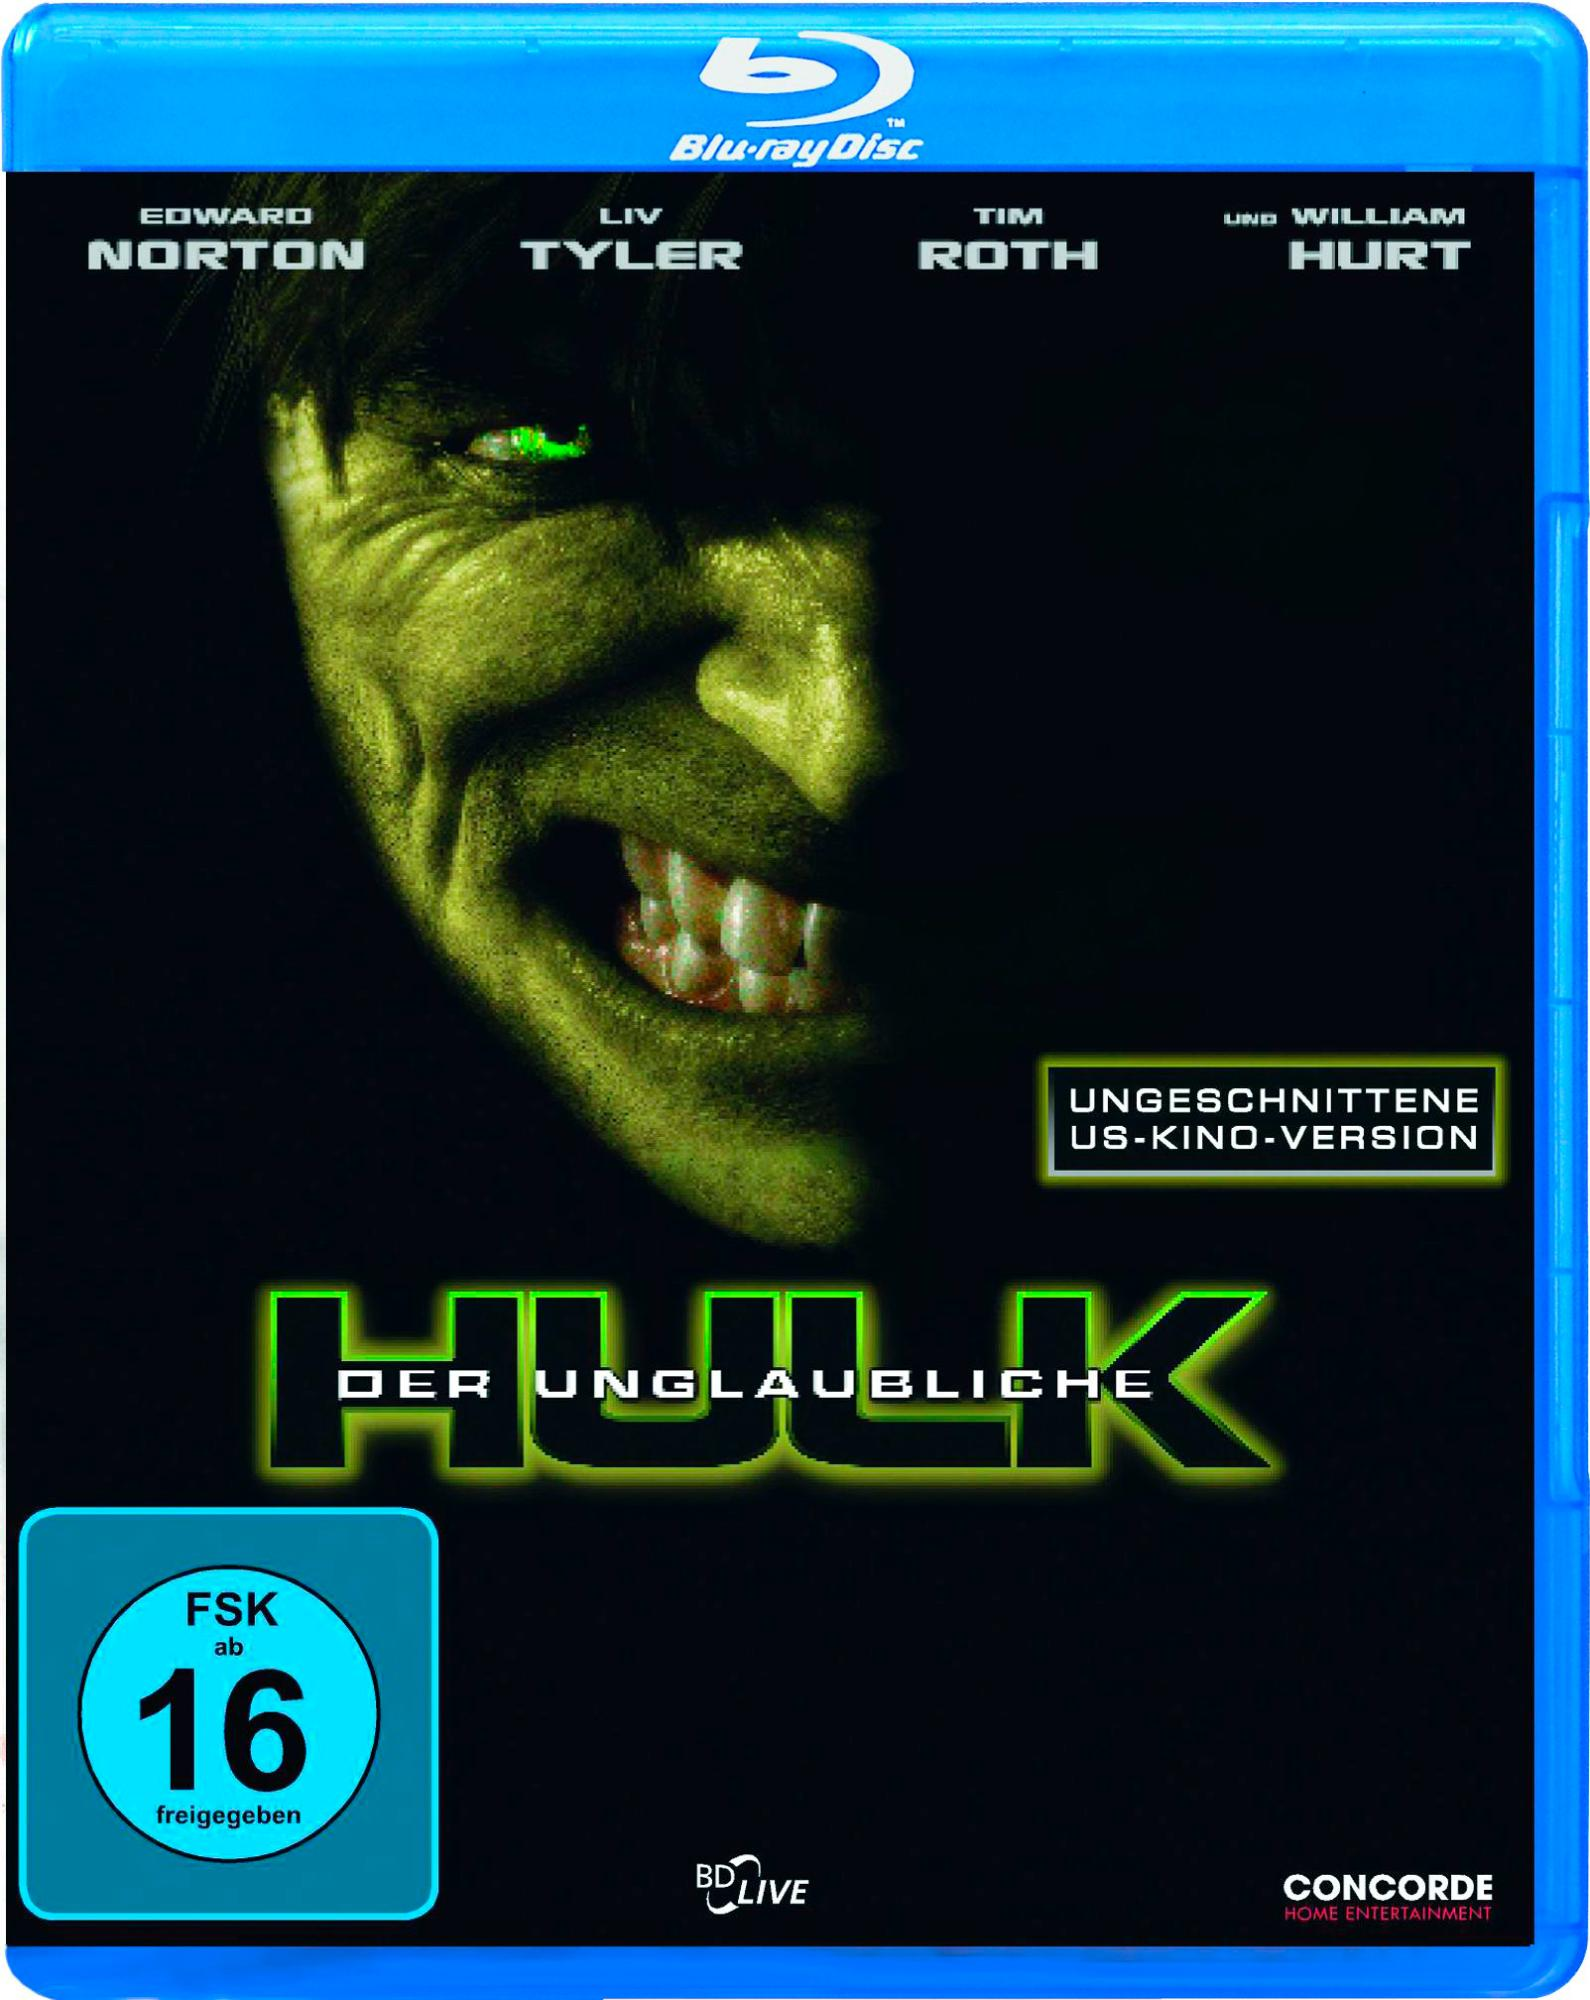 Blu-ray Hulk unglaubliche Der US-Kino-Version) (ungeschnittene